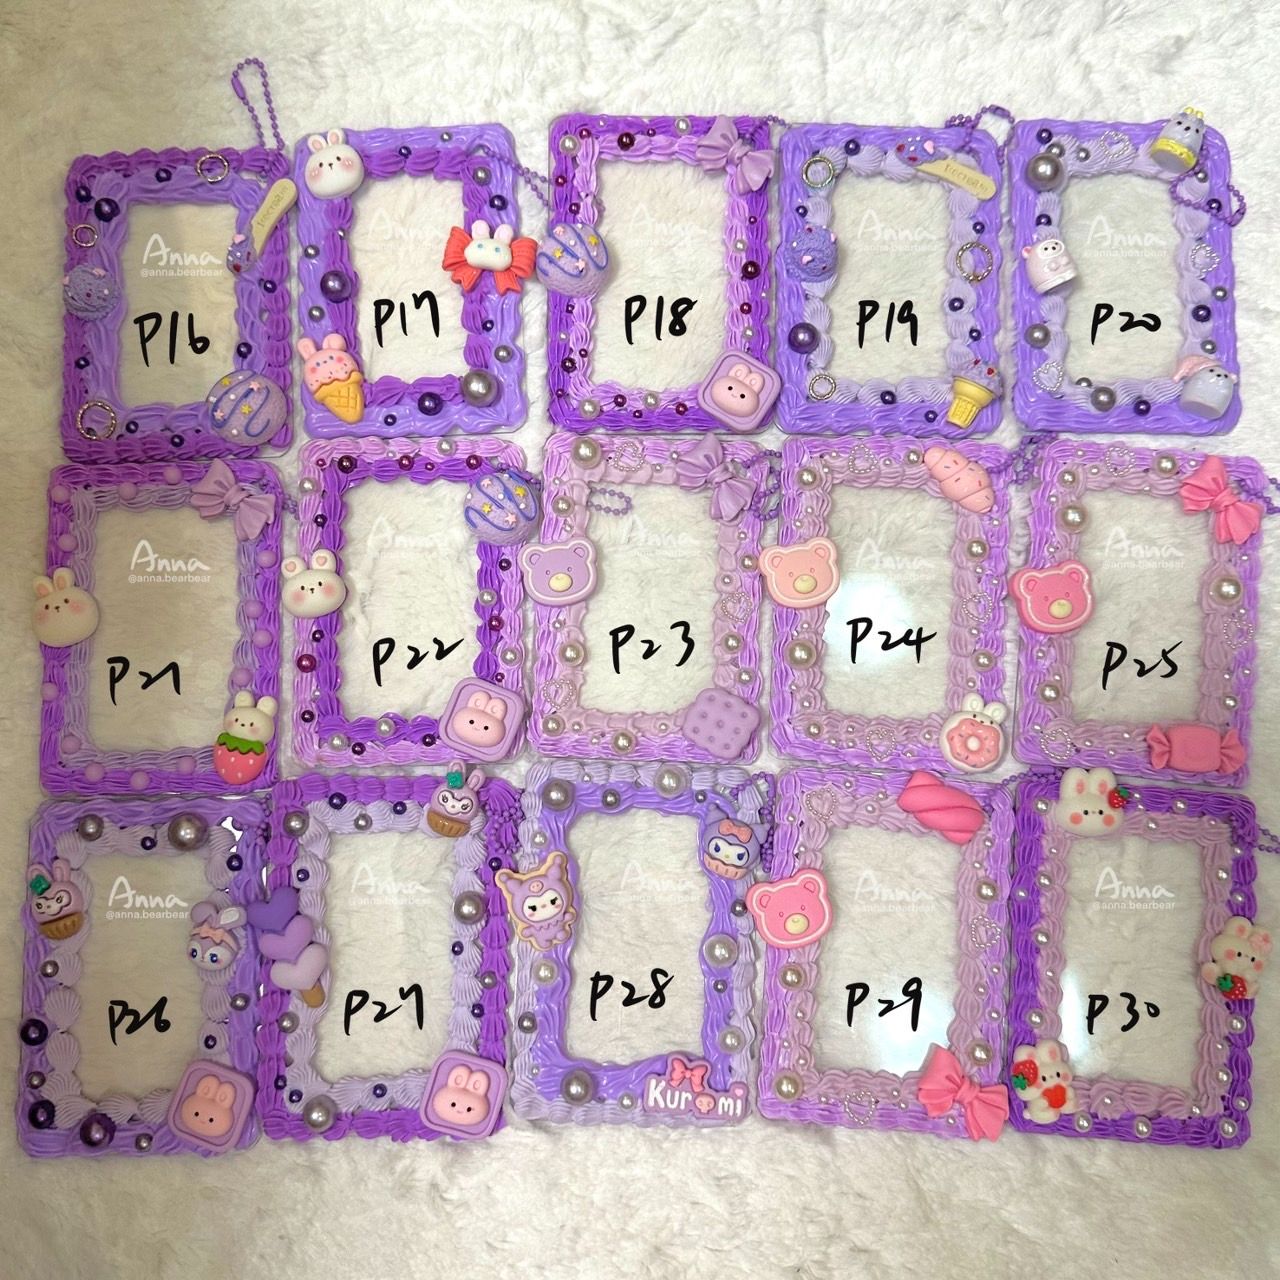 紫色P16~P43